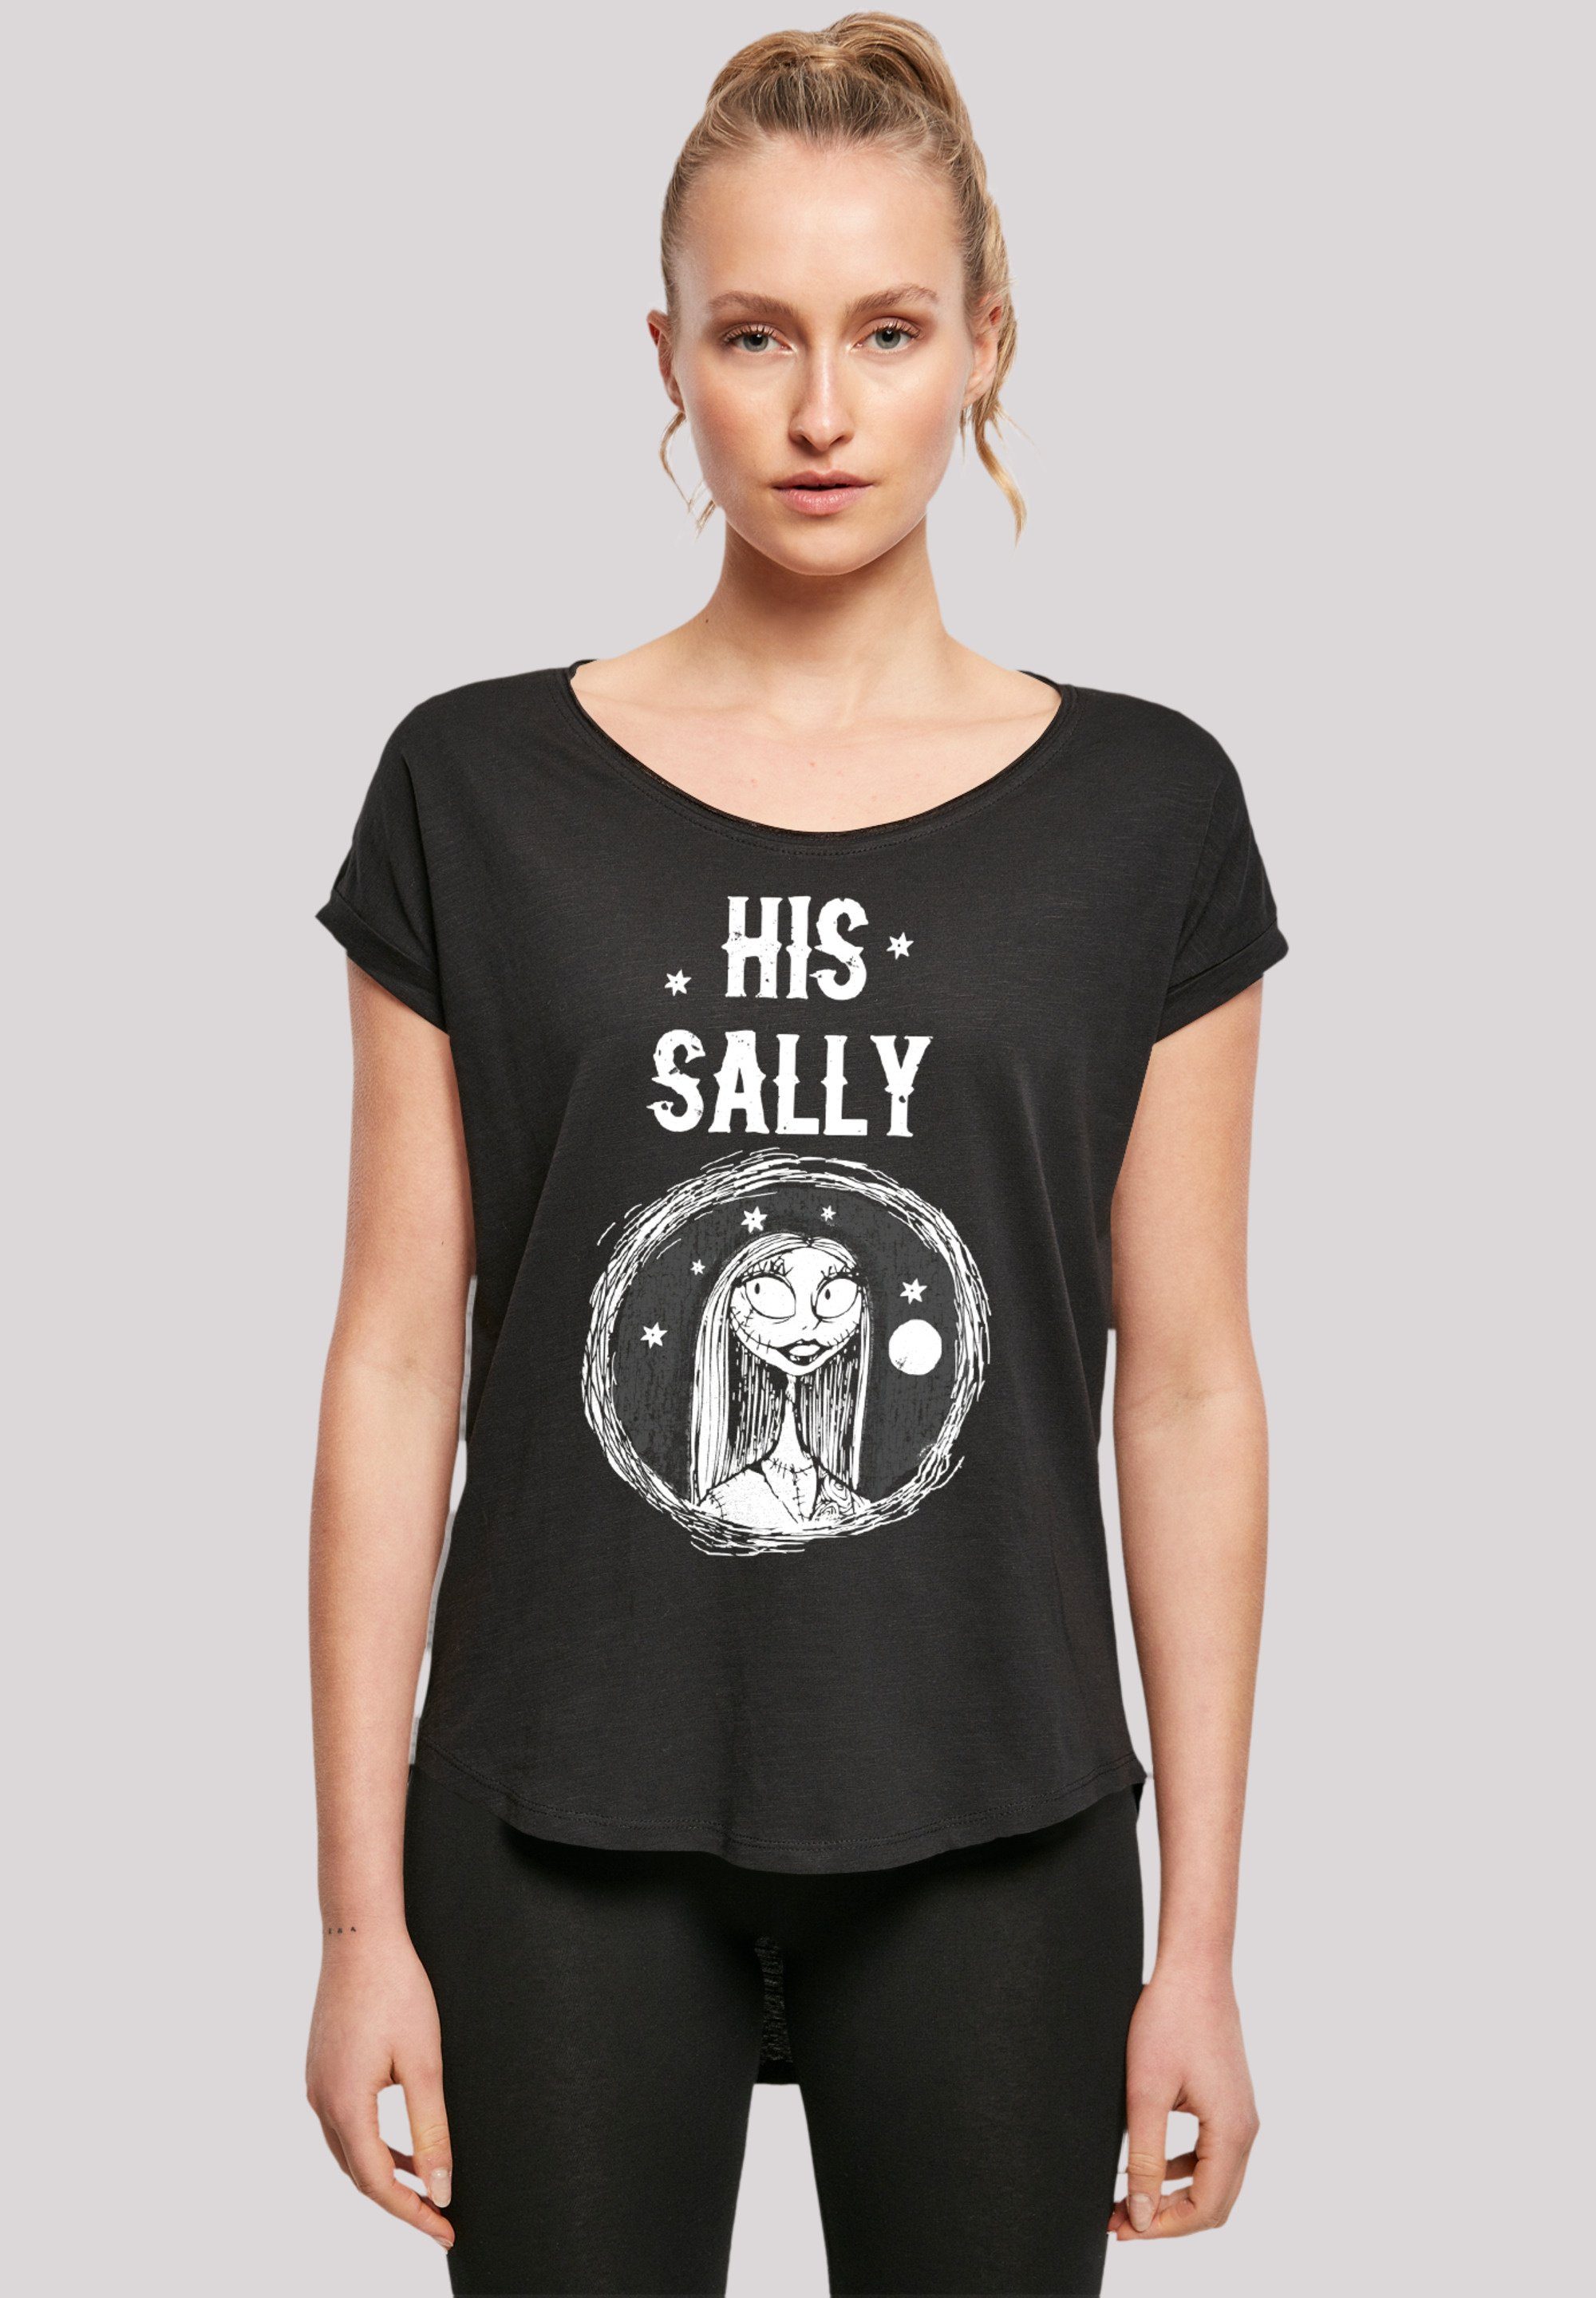 F4NT4STIC T-Shirt Disney Nightmare Before Christmas His Sally Premium  Qualität, Sehr weicher Baumwollstoff mit hohem Tragekomfort